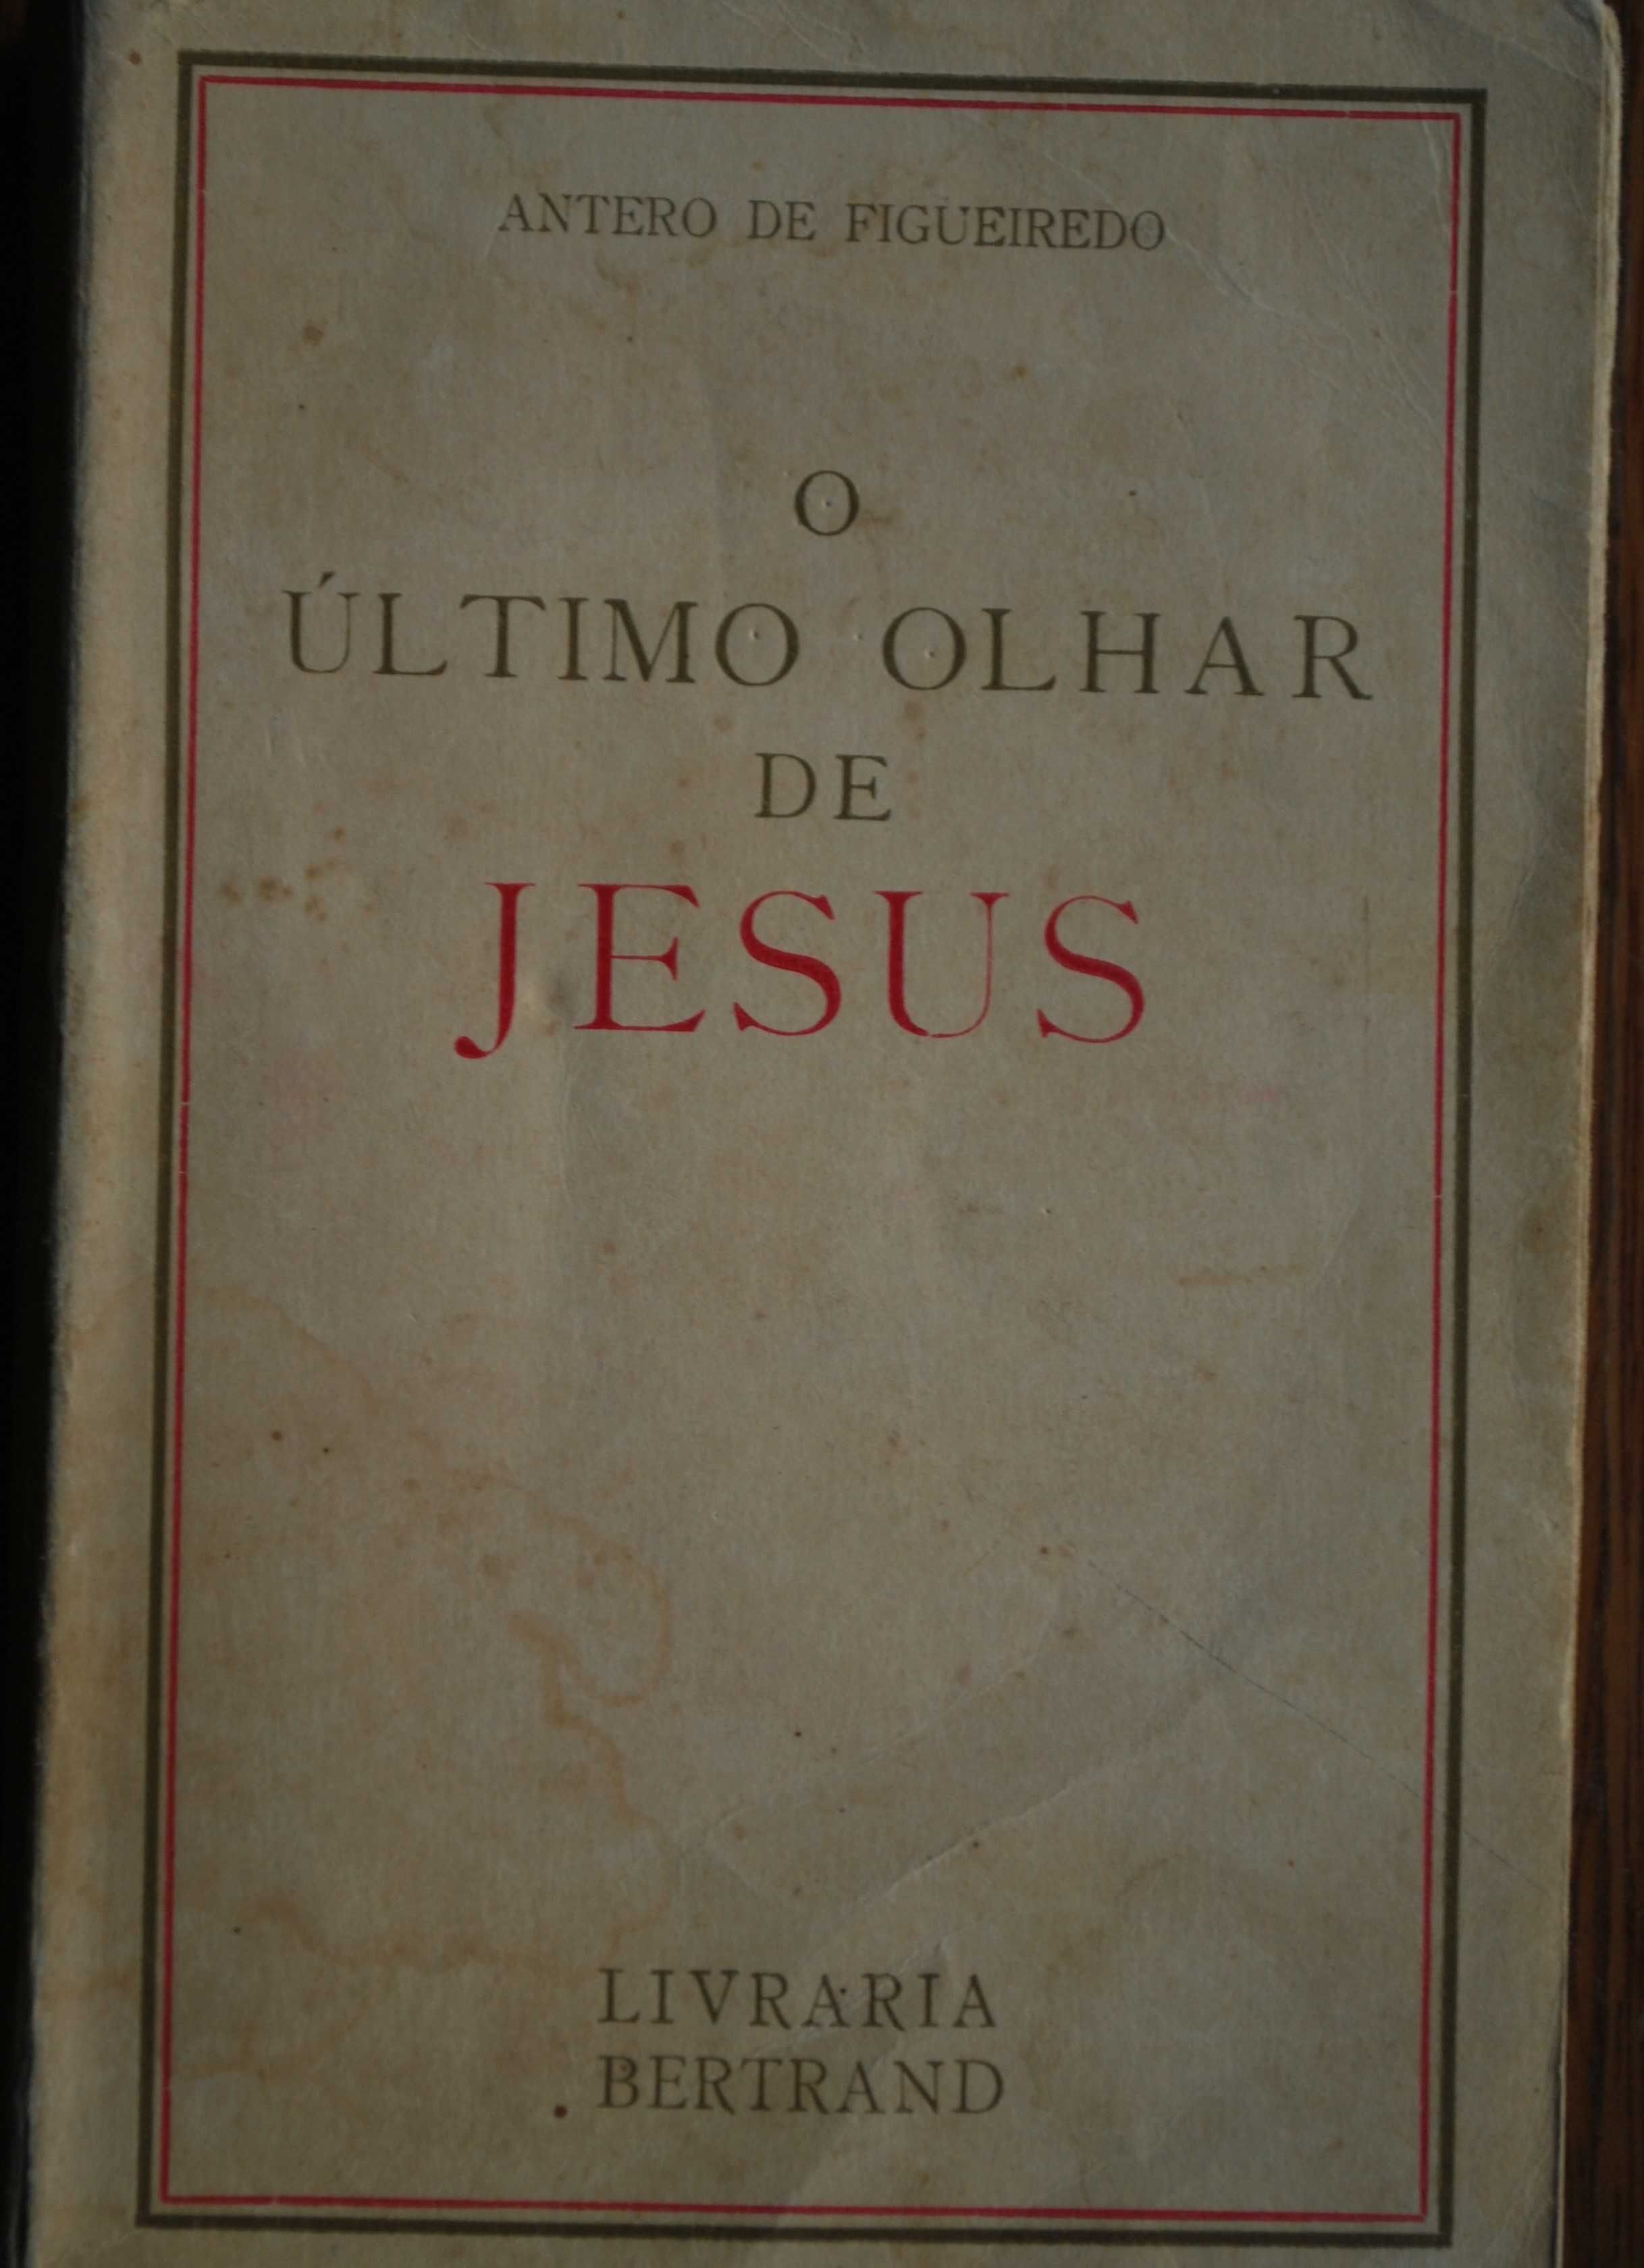 O Último Olhar de Jesus de Antero de Figueiredo - Rubricada pelo Autor